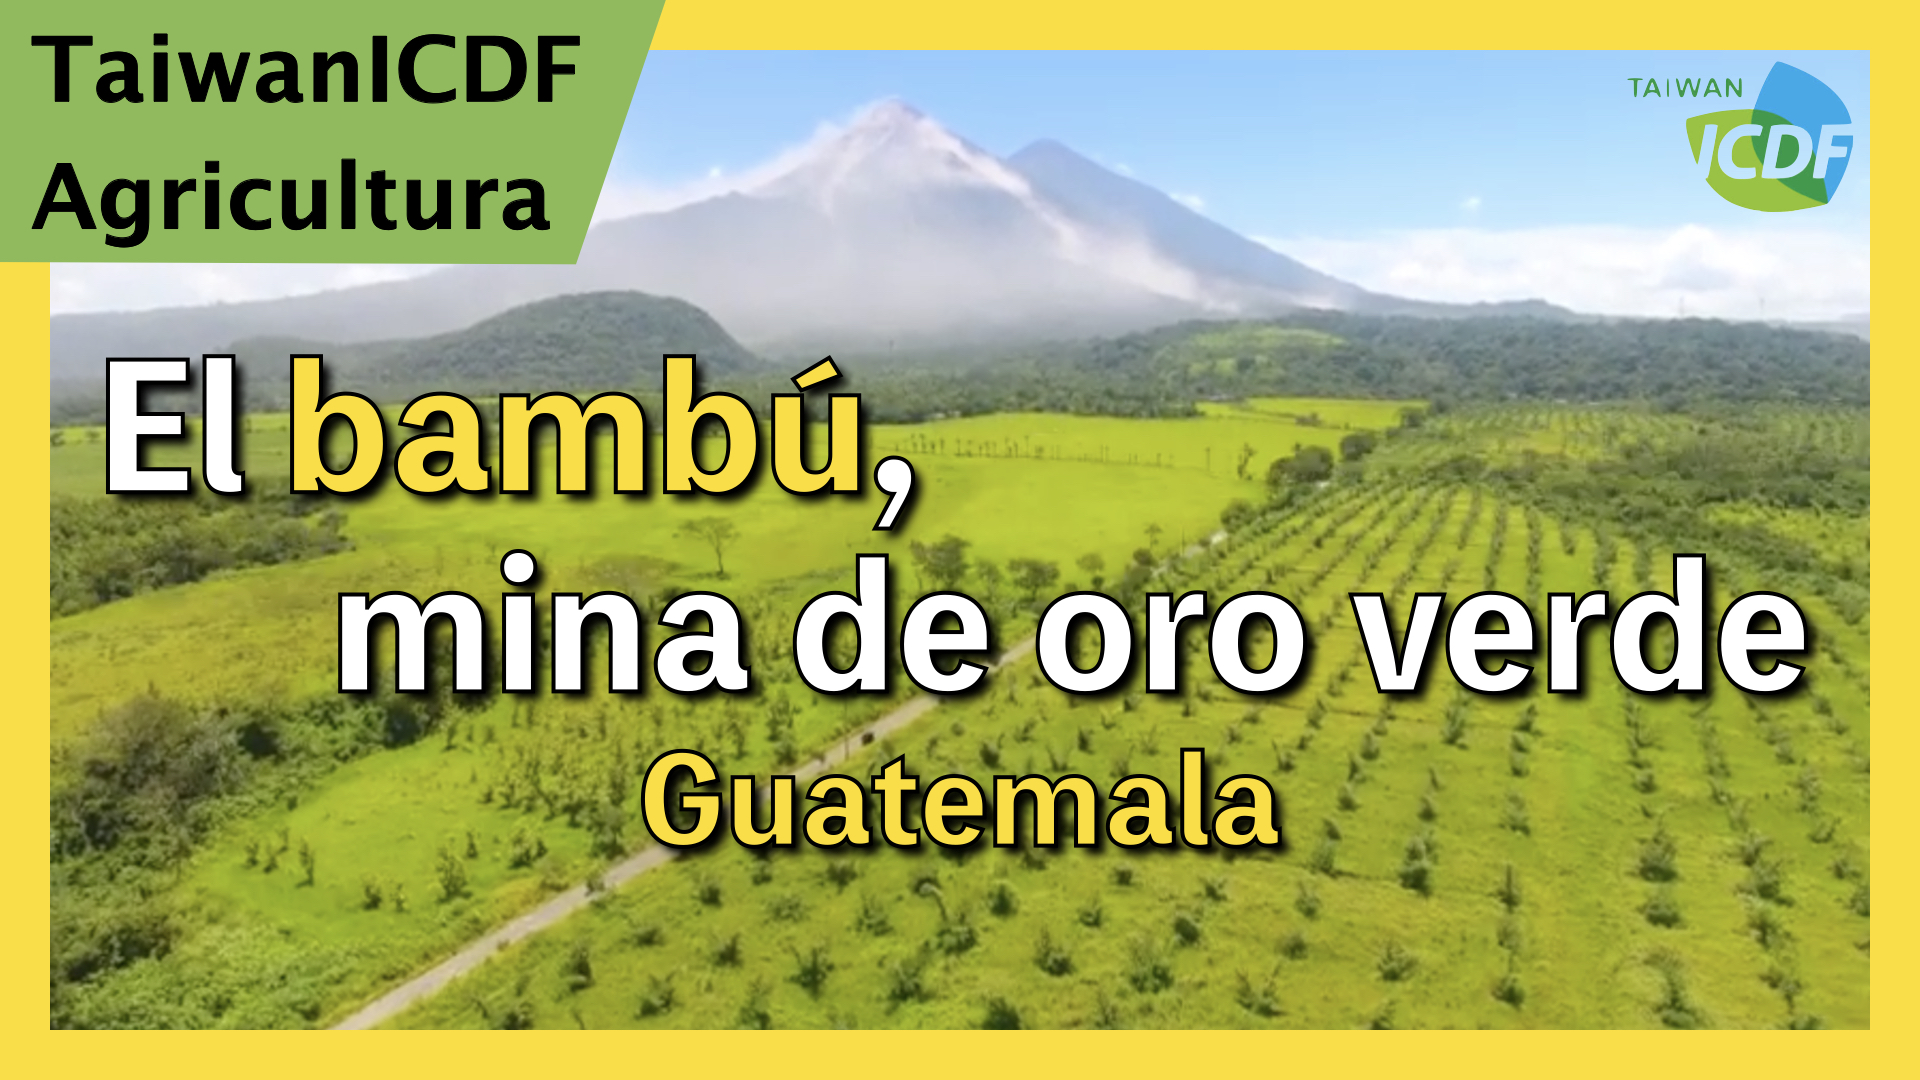 El bambú, mina de oro verde: Proyecto Industrialización del Bambú en Guatemala